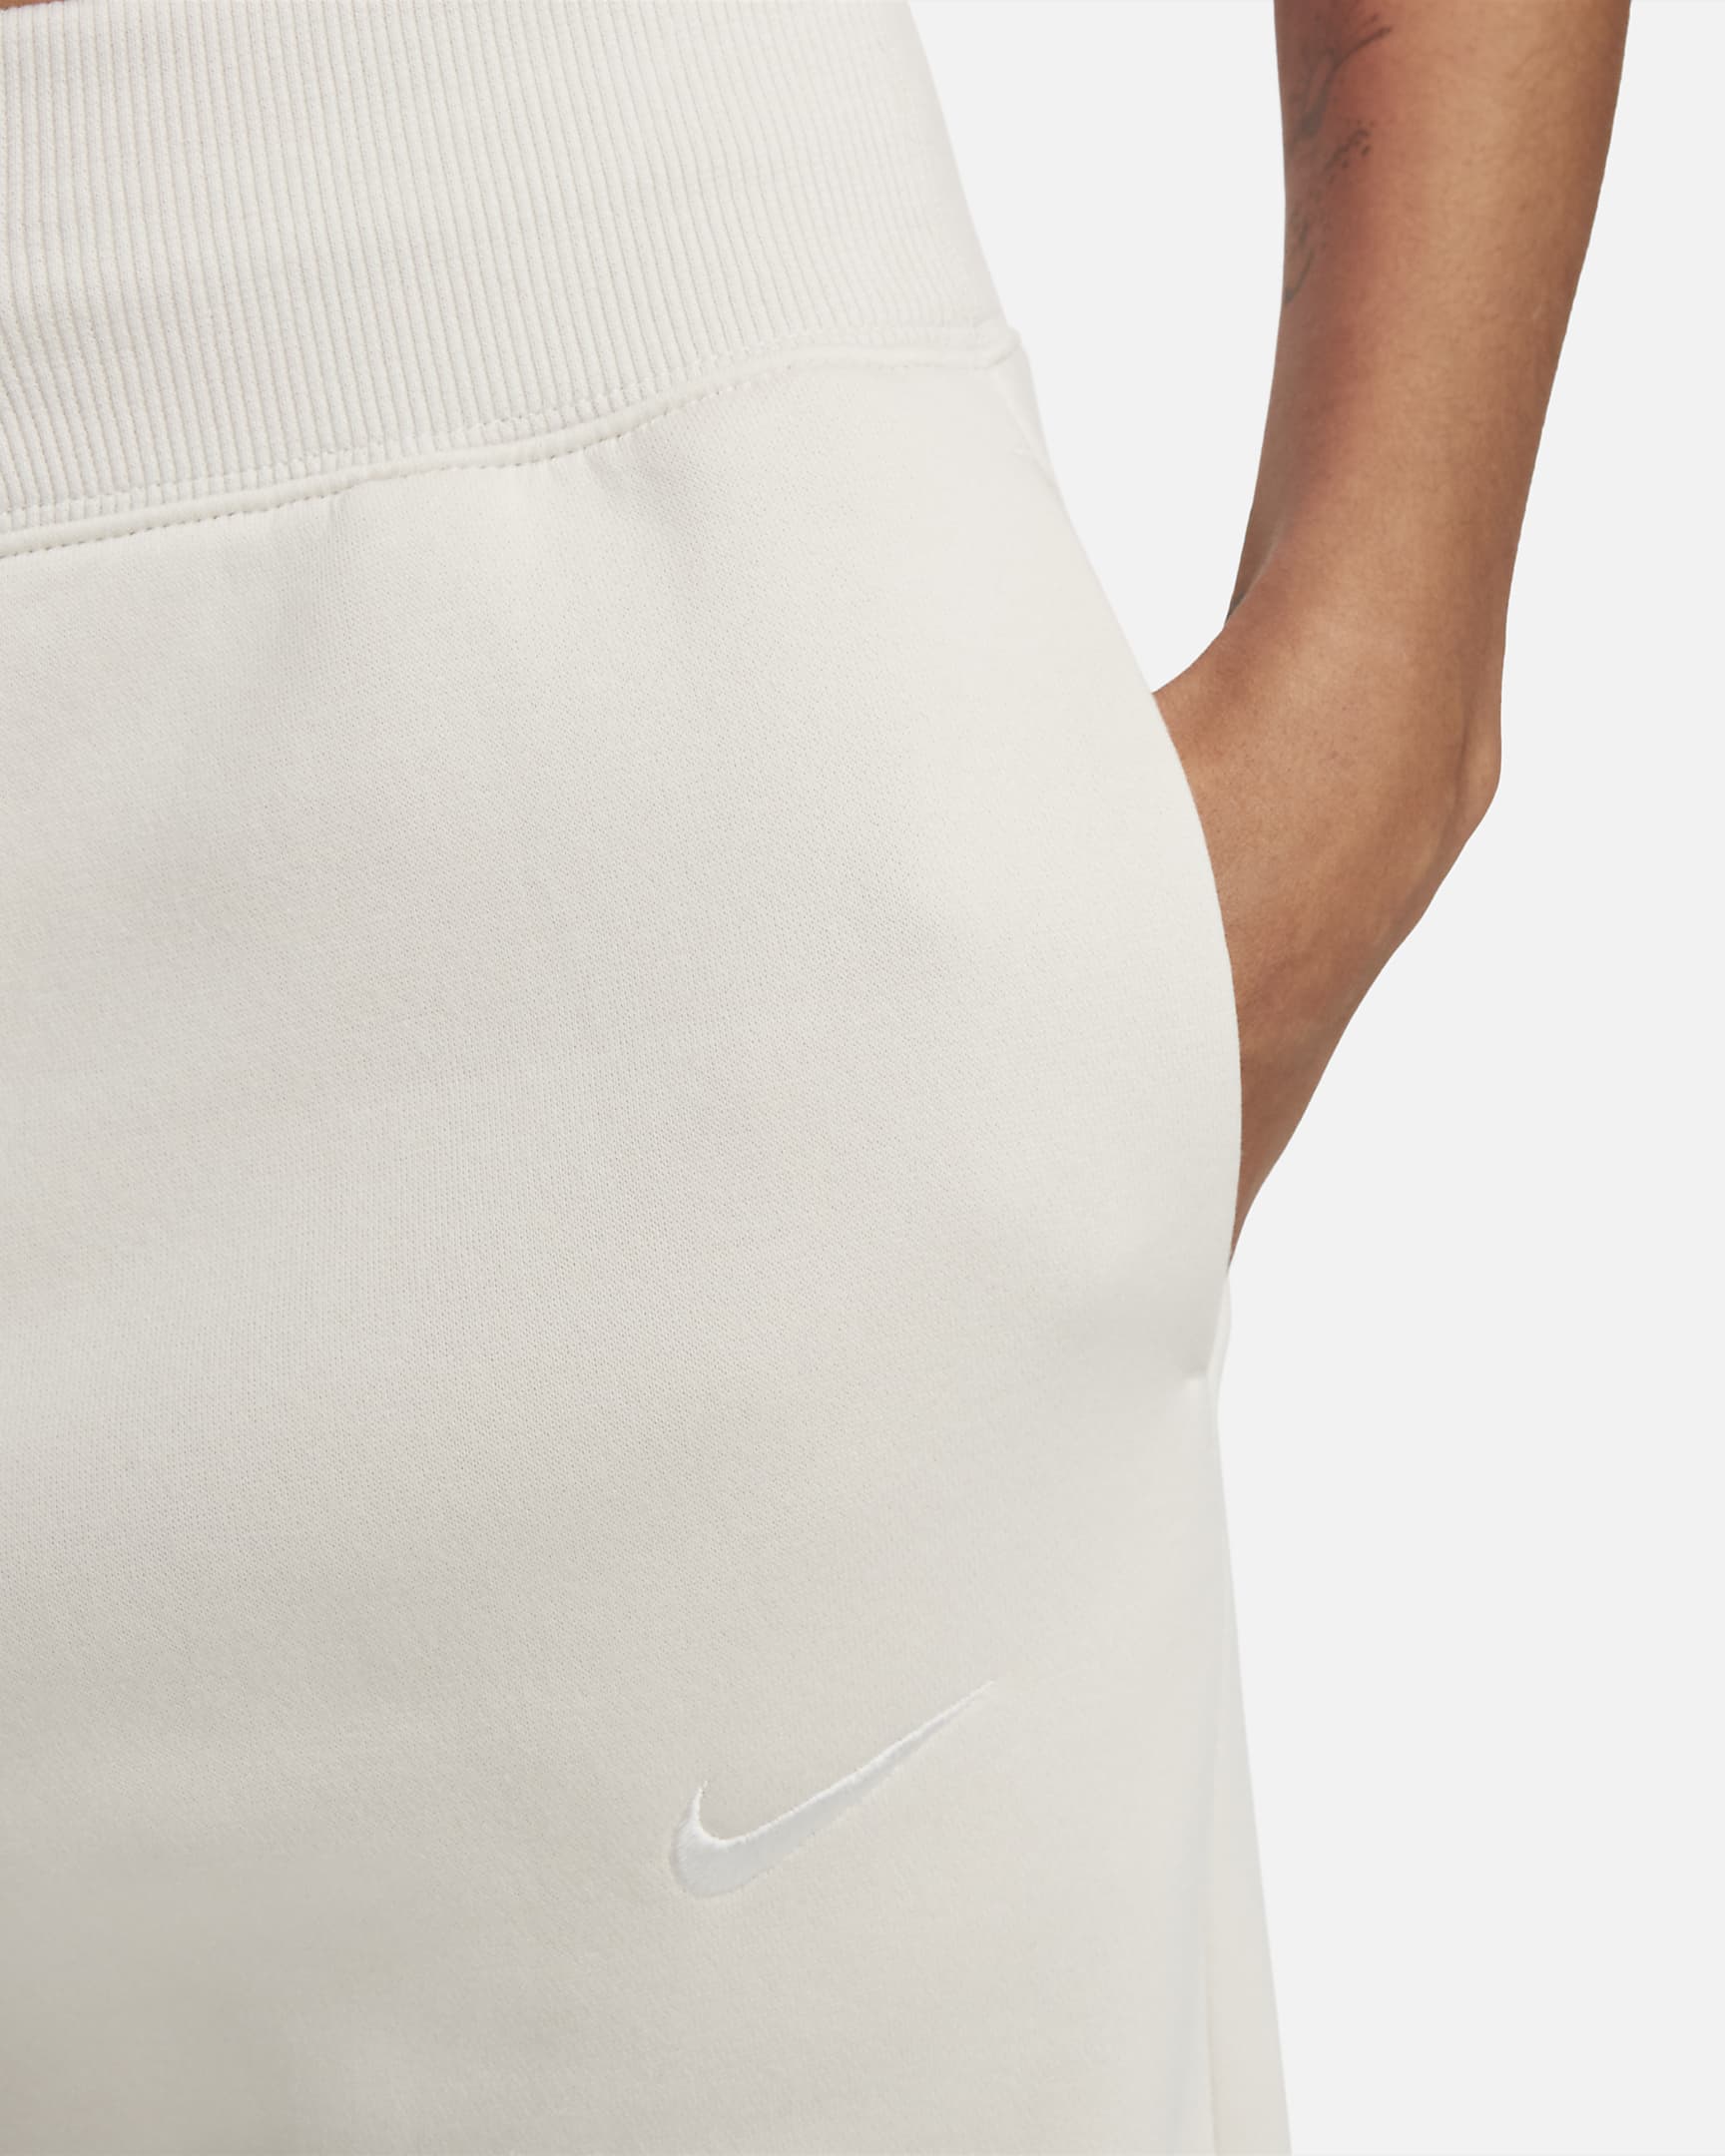 Nike Sportswear Phoenix Fleece Women's High-Waisted Cropped Sweatpants ...